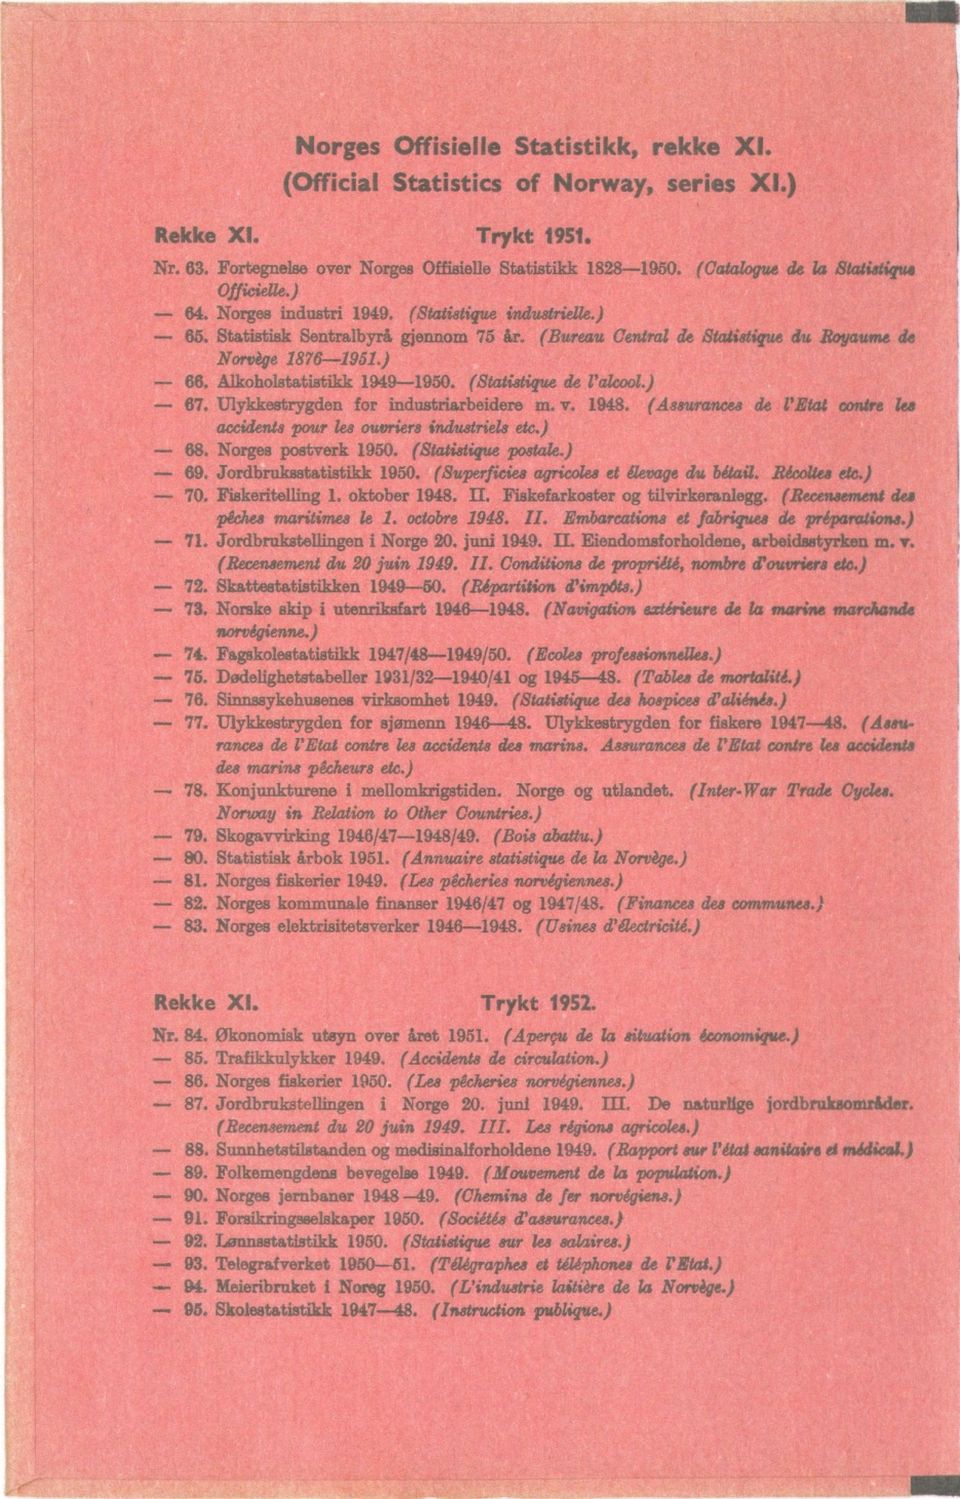 (Statistique ek l'alcool.) - 67. Ulykkestrygden for industriarbeidere m. v. 1948. (Amara/wee de l'etat contre ka accidents pour lea ouvriers imiustriels etc.) 68. Norges postverk 1950.